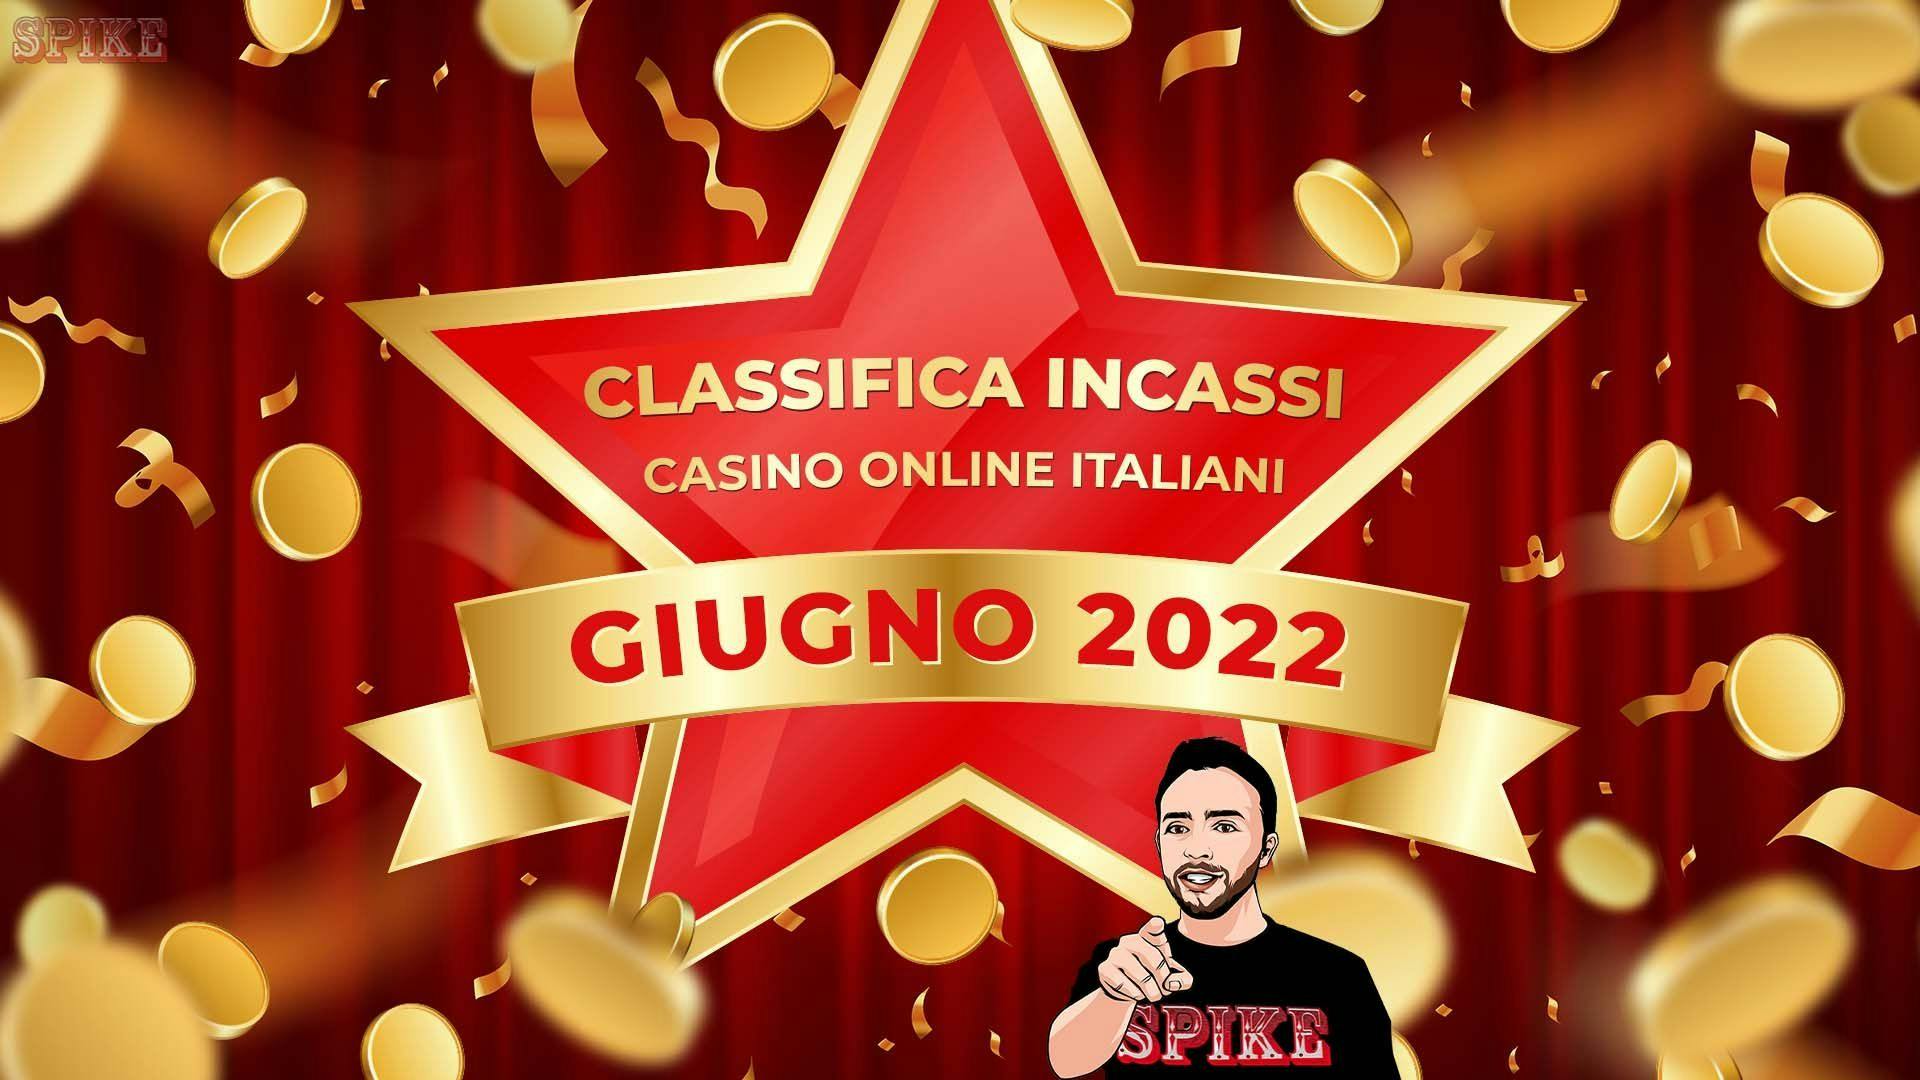 Casino Games Giugno 2022